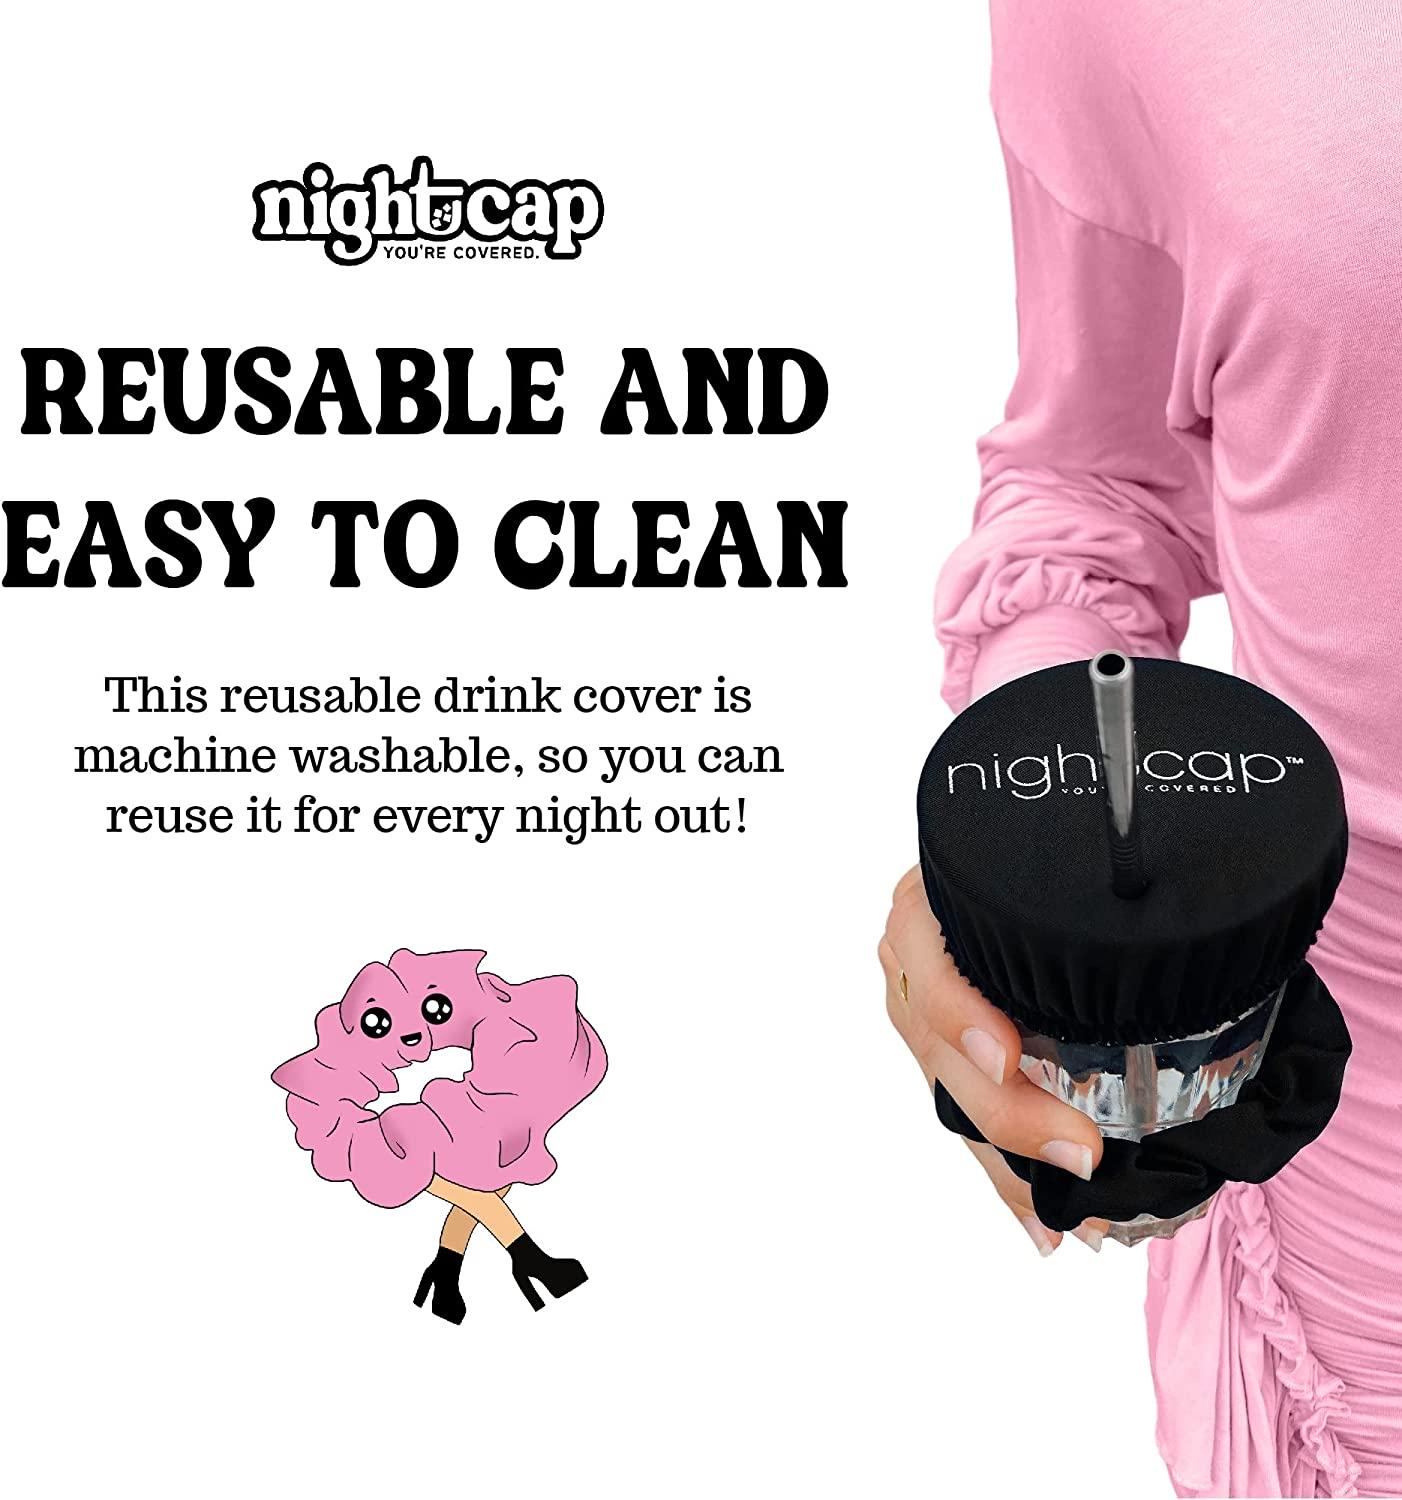 NightCap: Drink Spiking Prevention